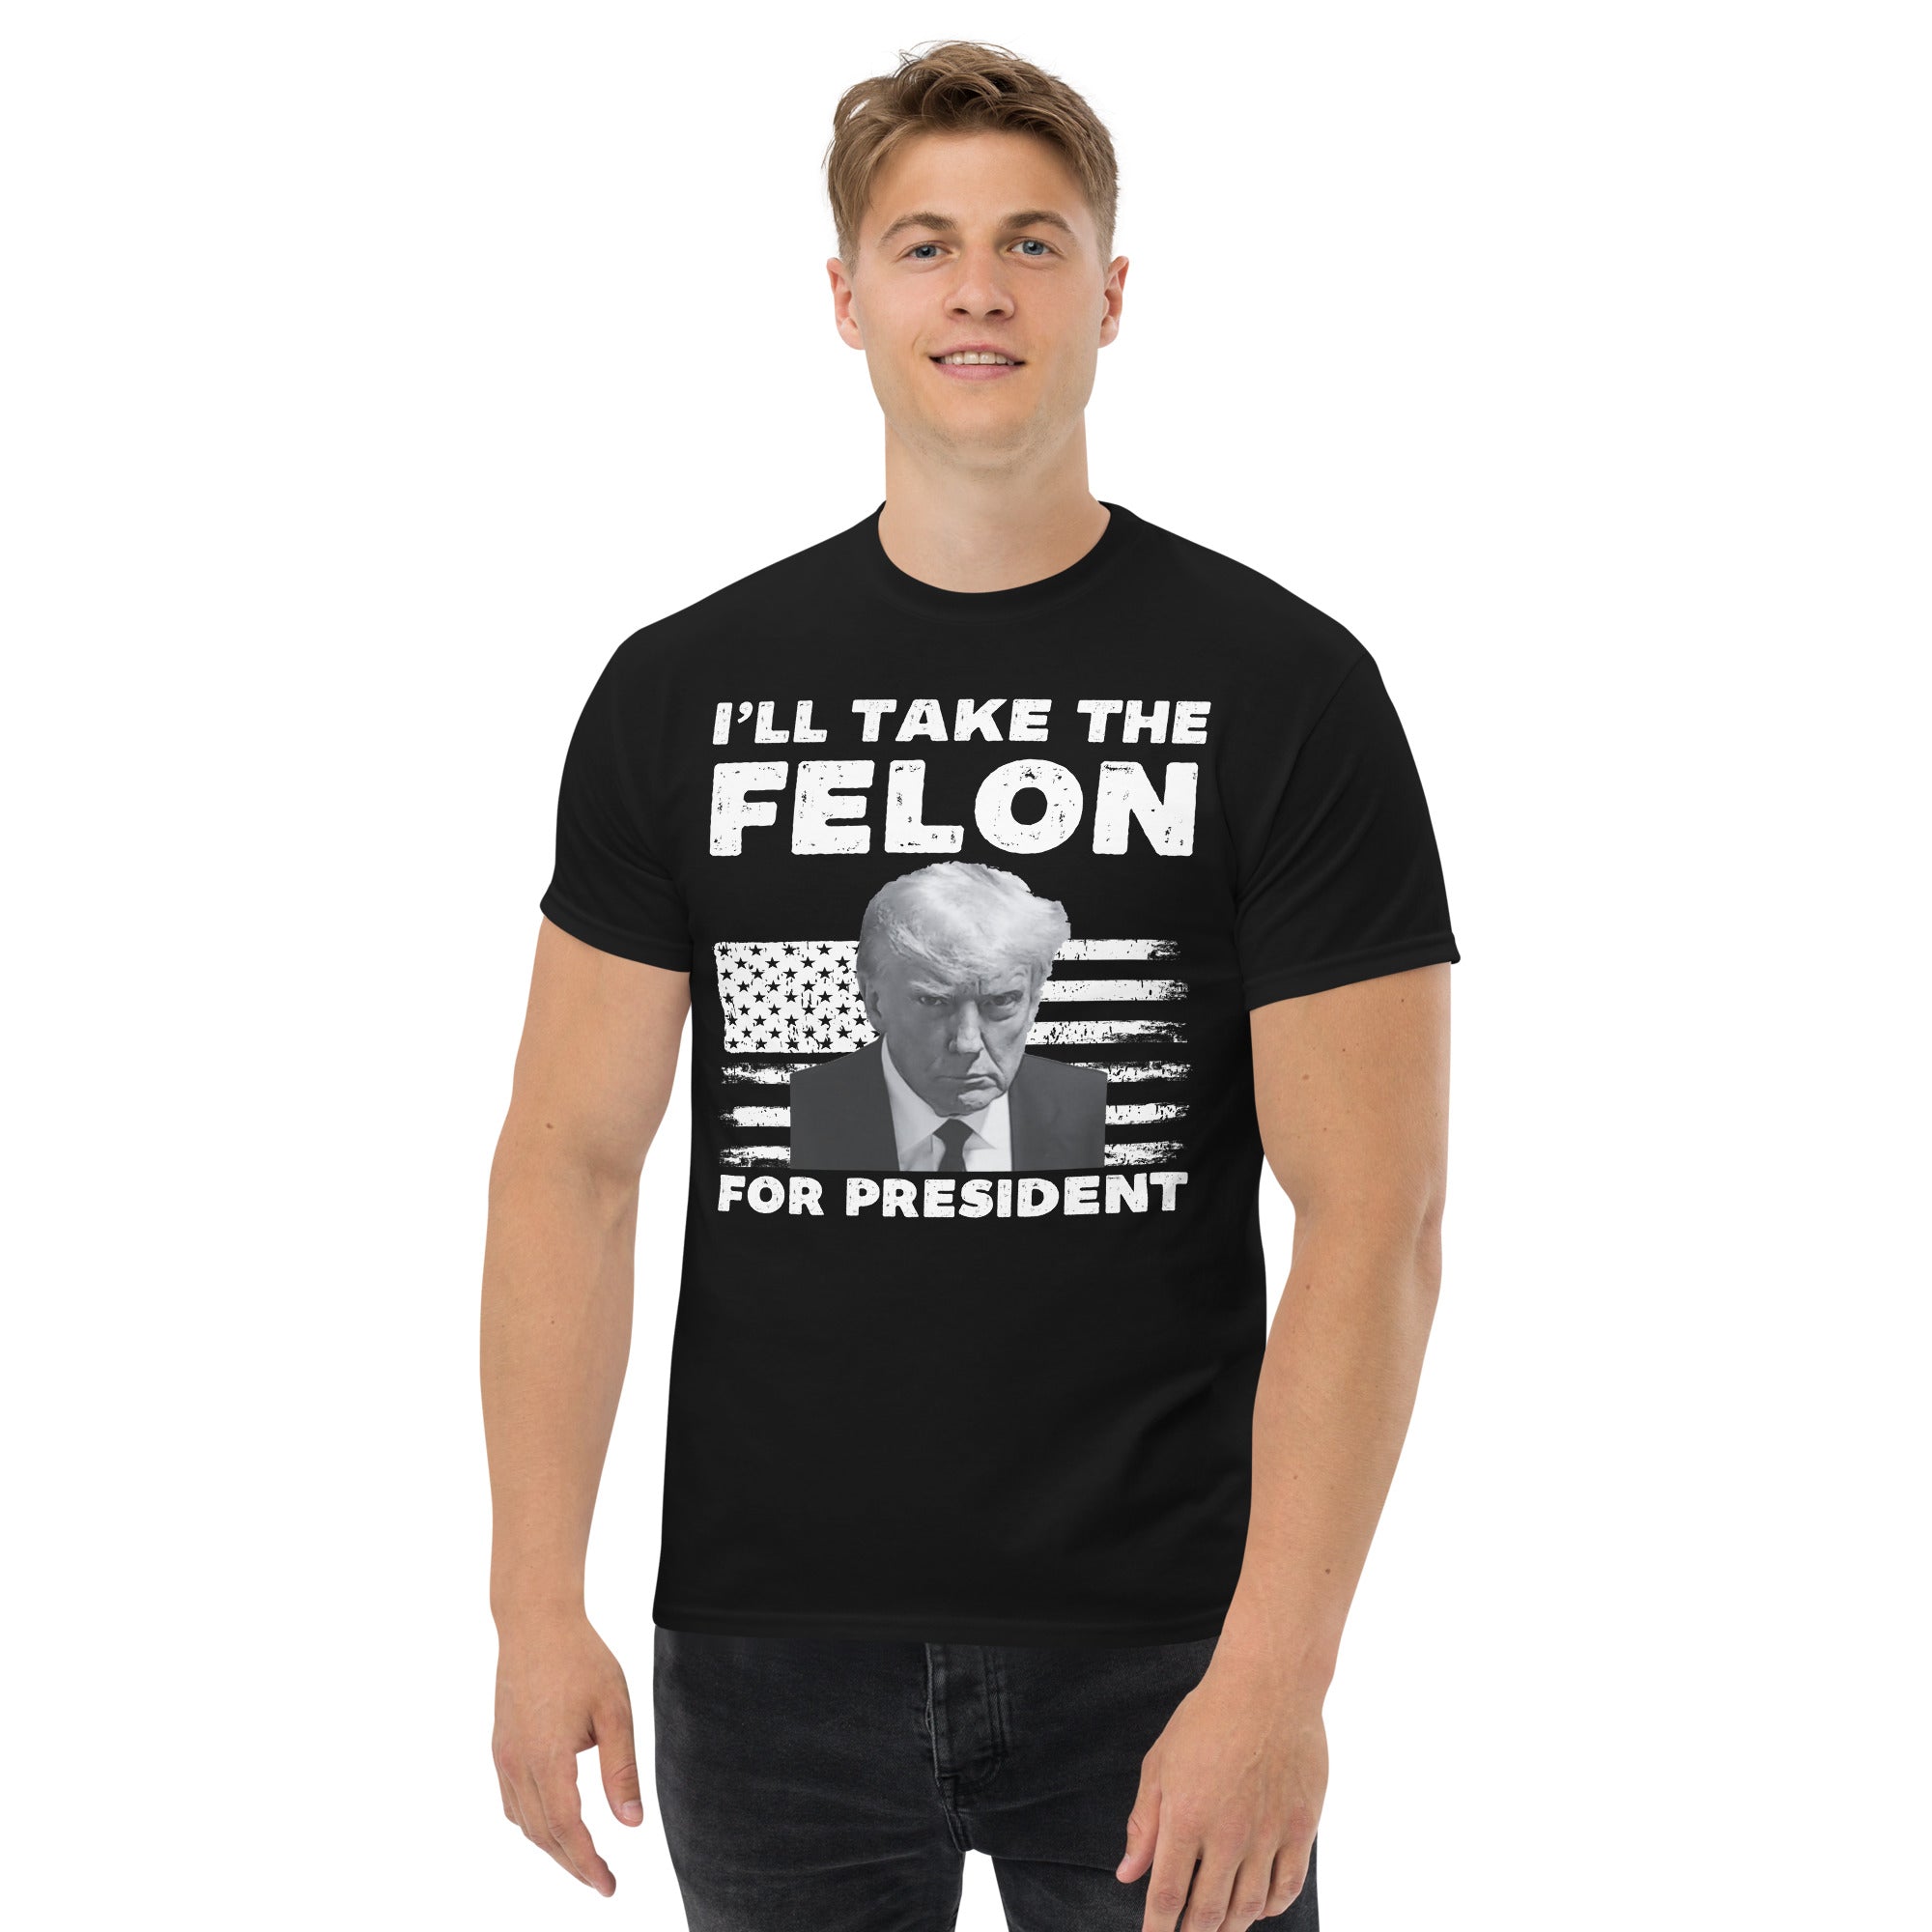 Trump 2024 Shirt, Vote Felon 2024, Republikaner Geschenke, Wahlshirt, Politisches T-Shirt, Felon For President, Konservatives Shirt